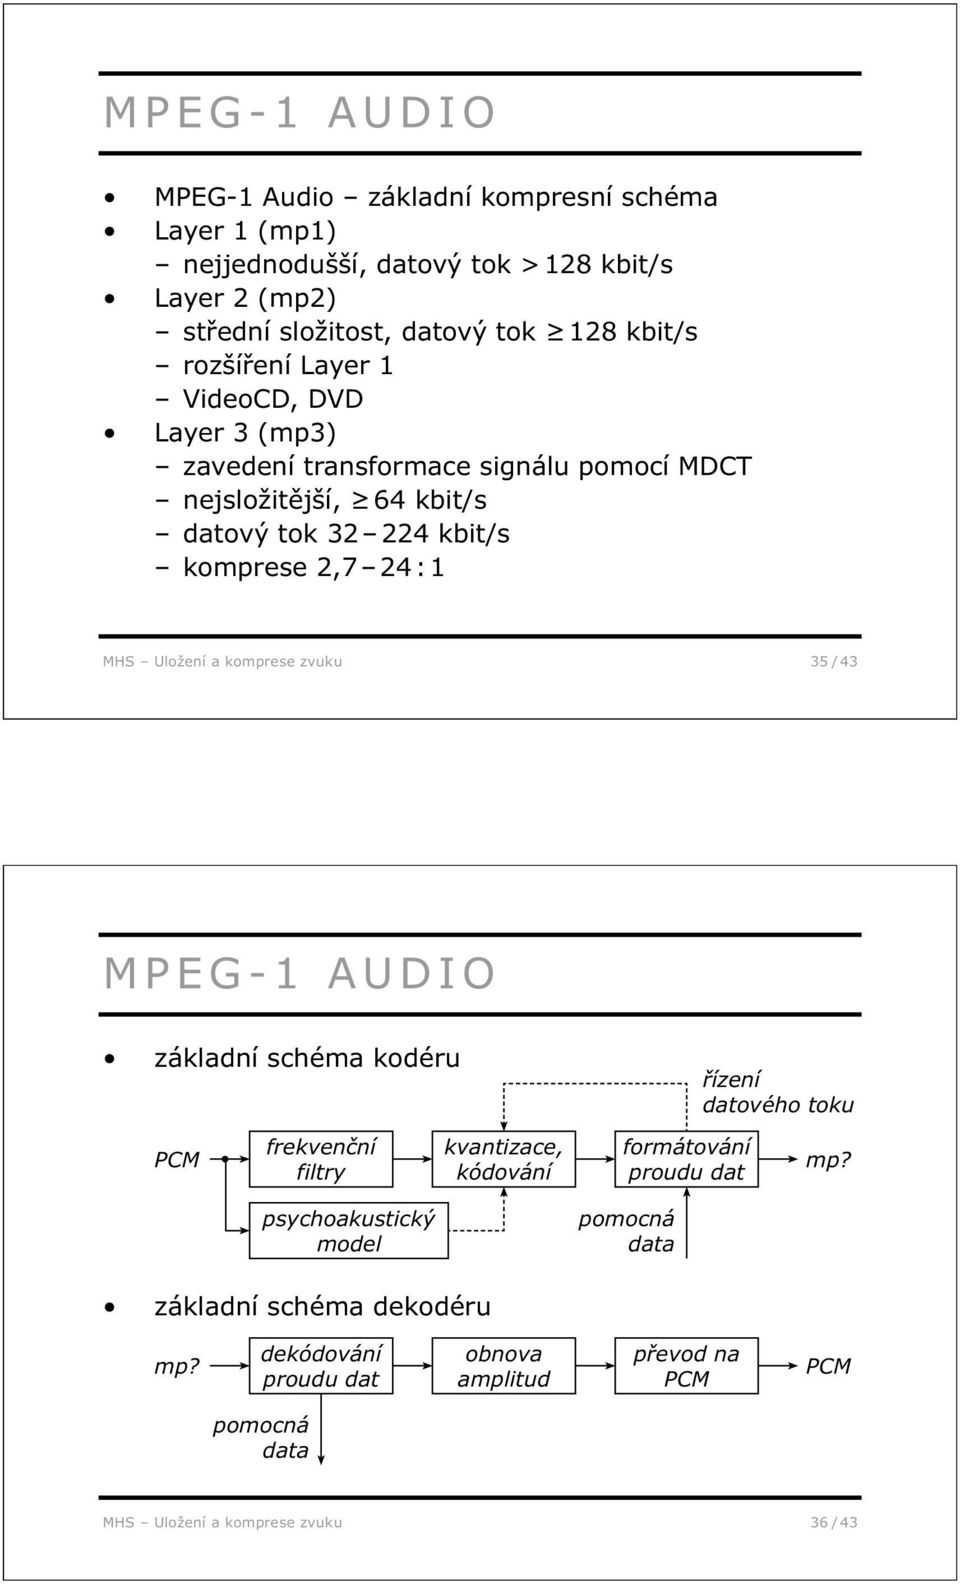 Uložení a komprese zvuku 35 / 43 MPEG-1 AUDIO základní schéma kodéru řízení datového toku PCM frekvenční filtry kvantizace, kódování formátování proudu dat mp?